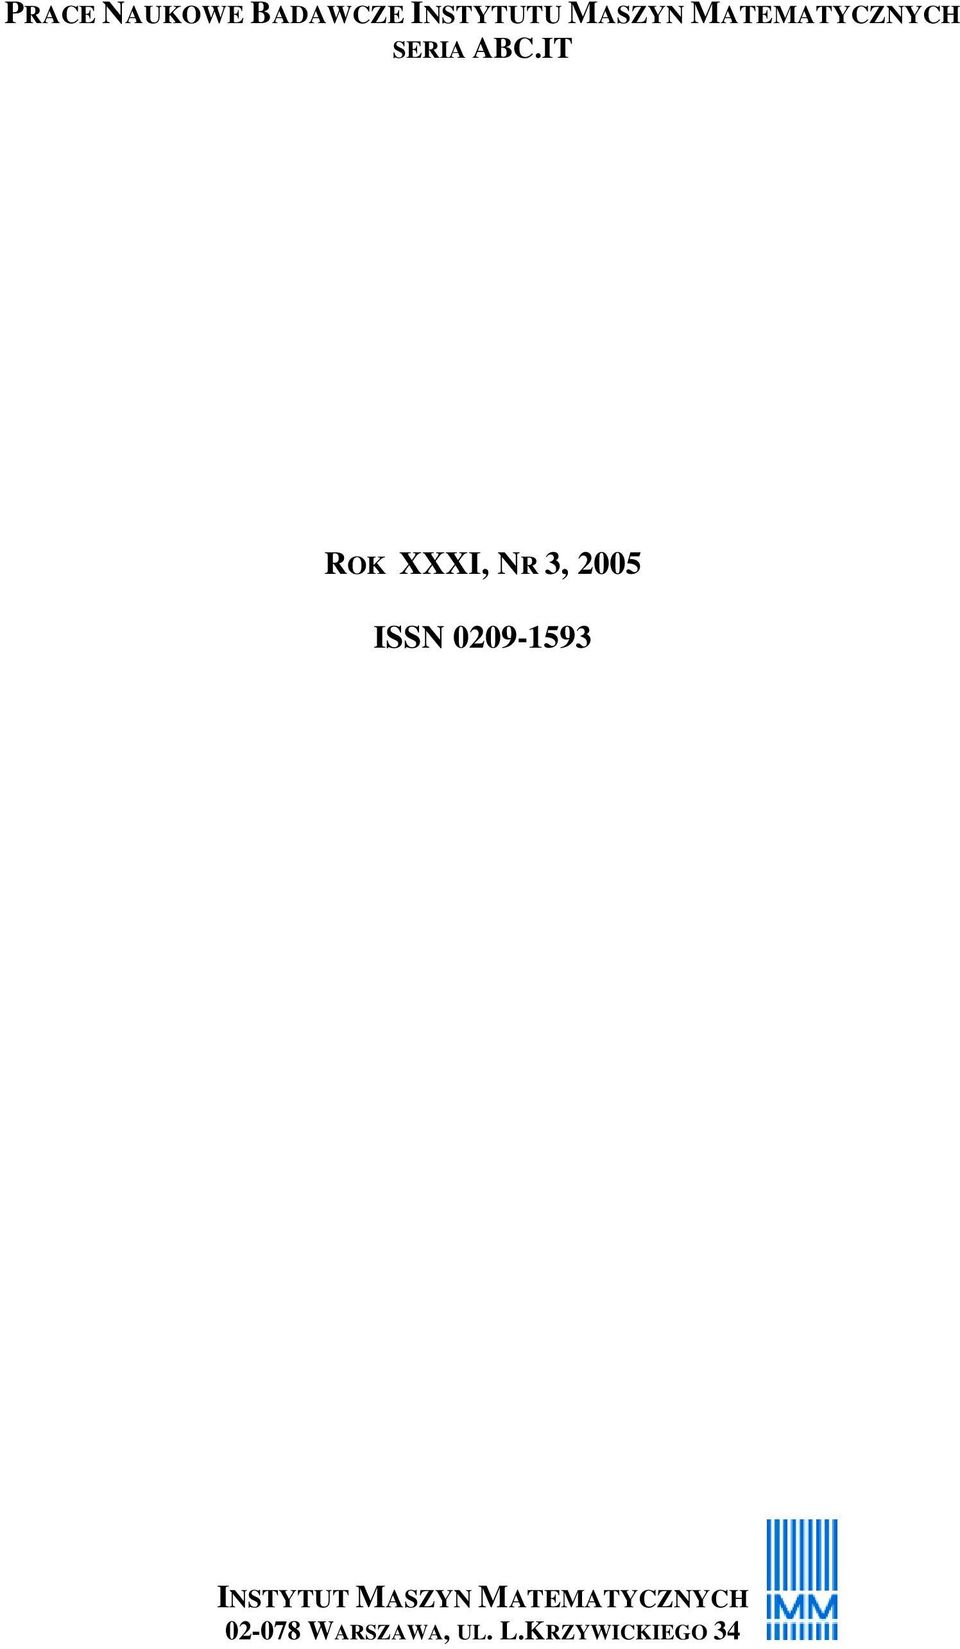 IT ROK XXXI, NR 3, 2005 ISSN 0209-1593